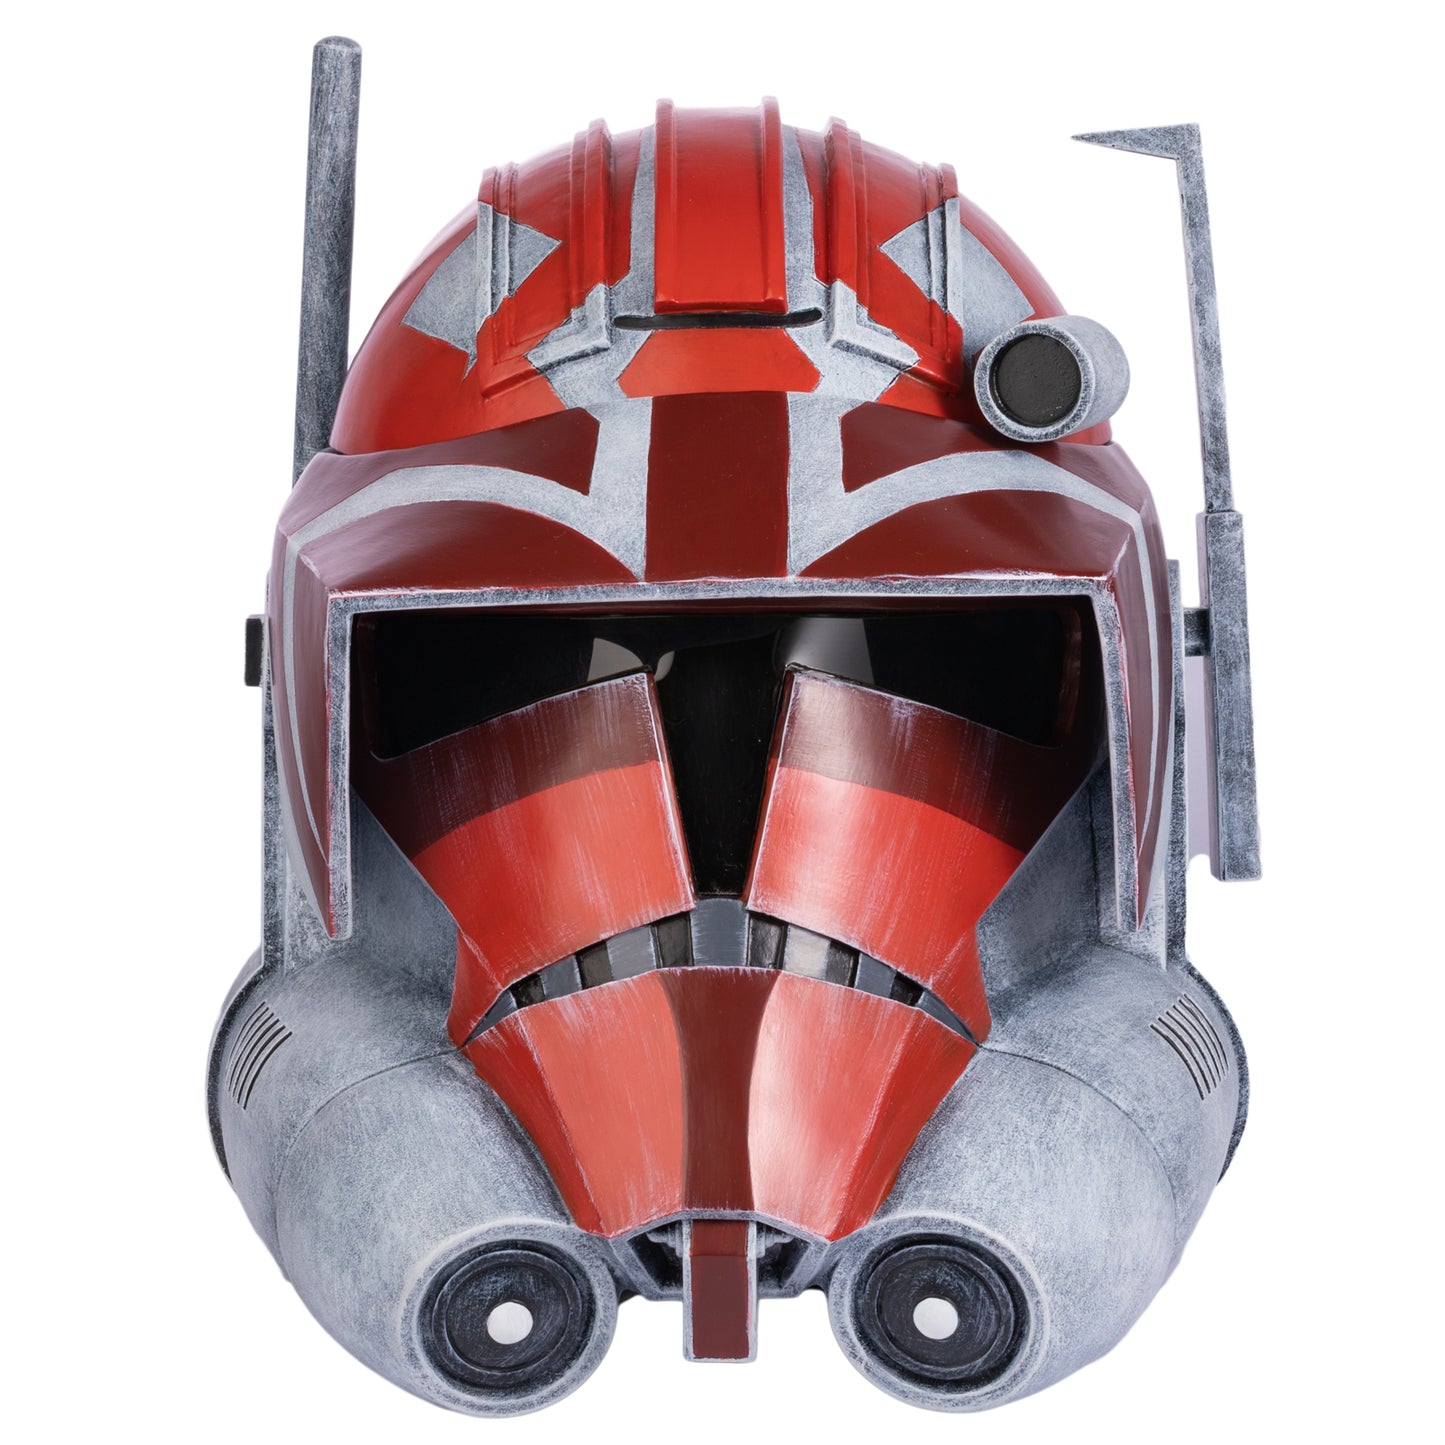 Xcoser Star Wars The Clone Wars 332nd Vaughn Clone Trooper Helm Halloween Cosplay Helm für Erwachsene